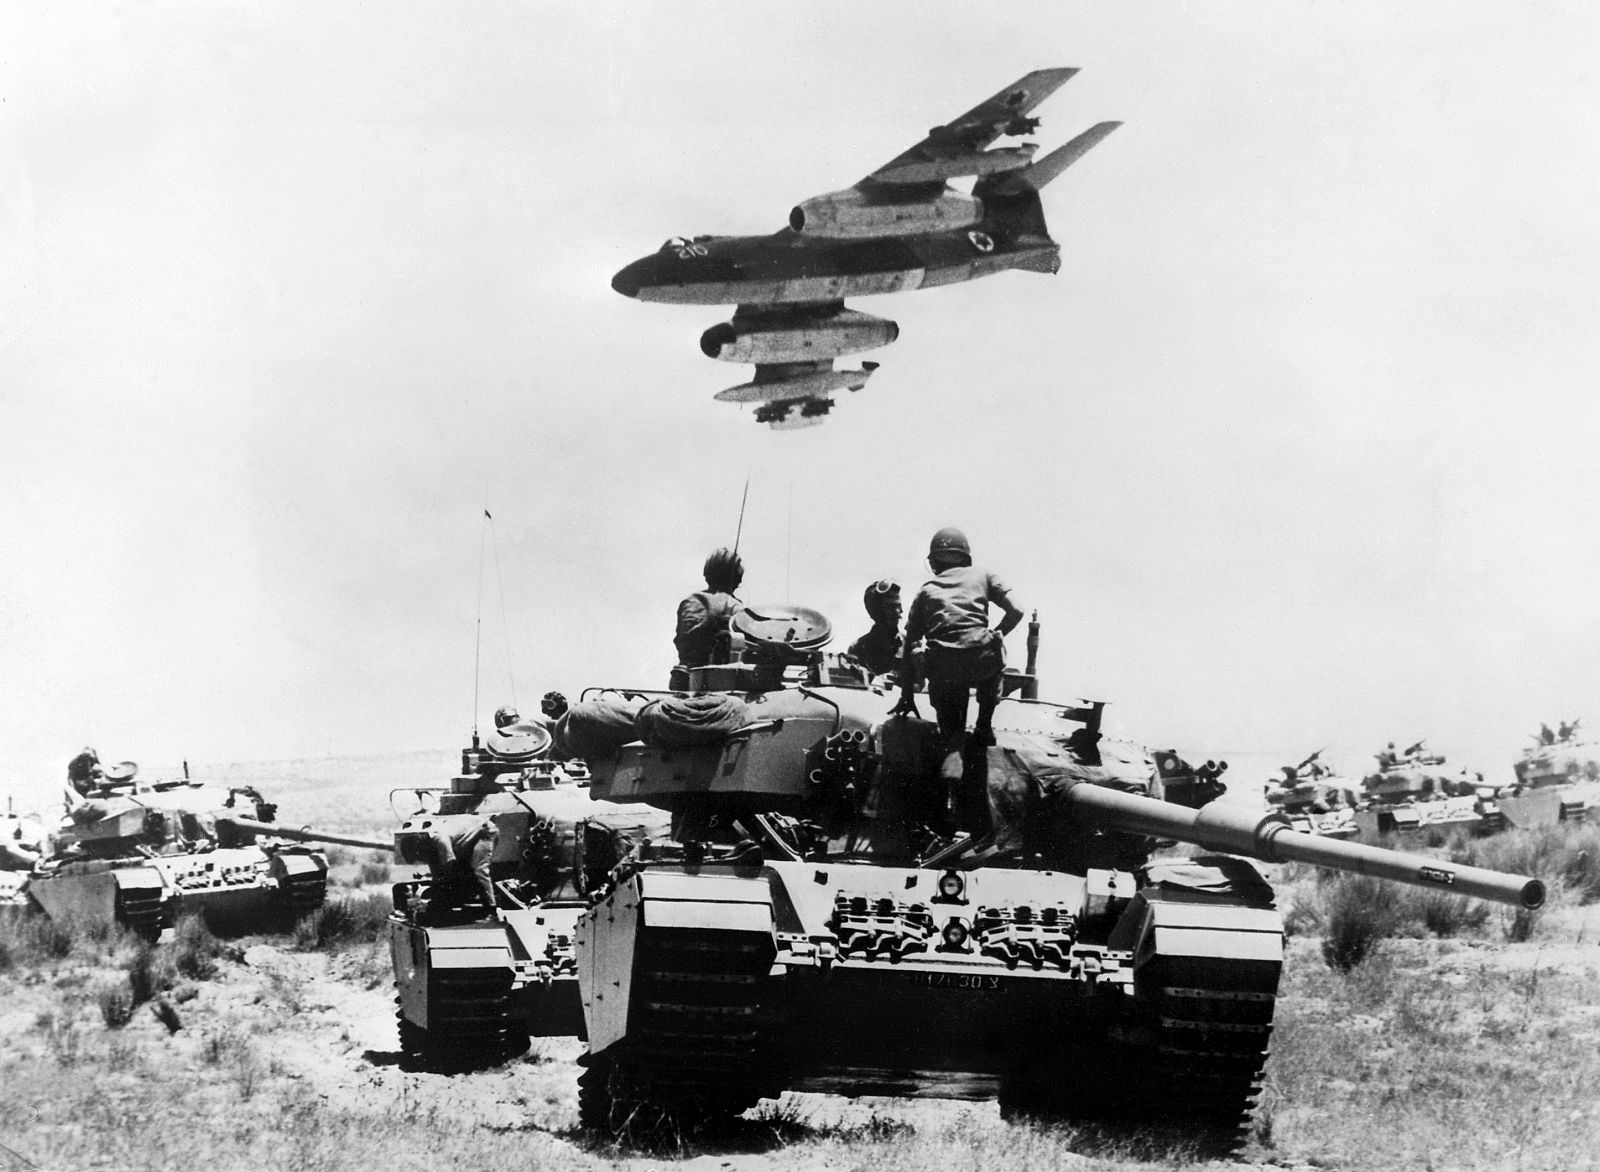 Un avión de guerra sobrevuela las tropas israelíes que avanzan en tanques por la península del Sinaí en la frontera entre Israel y Egipto, el 25 de mayo de 1967.